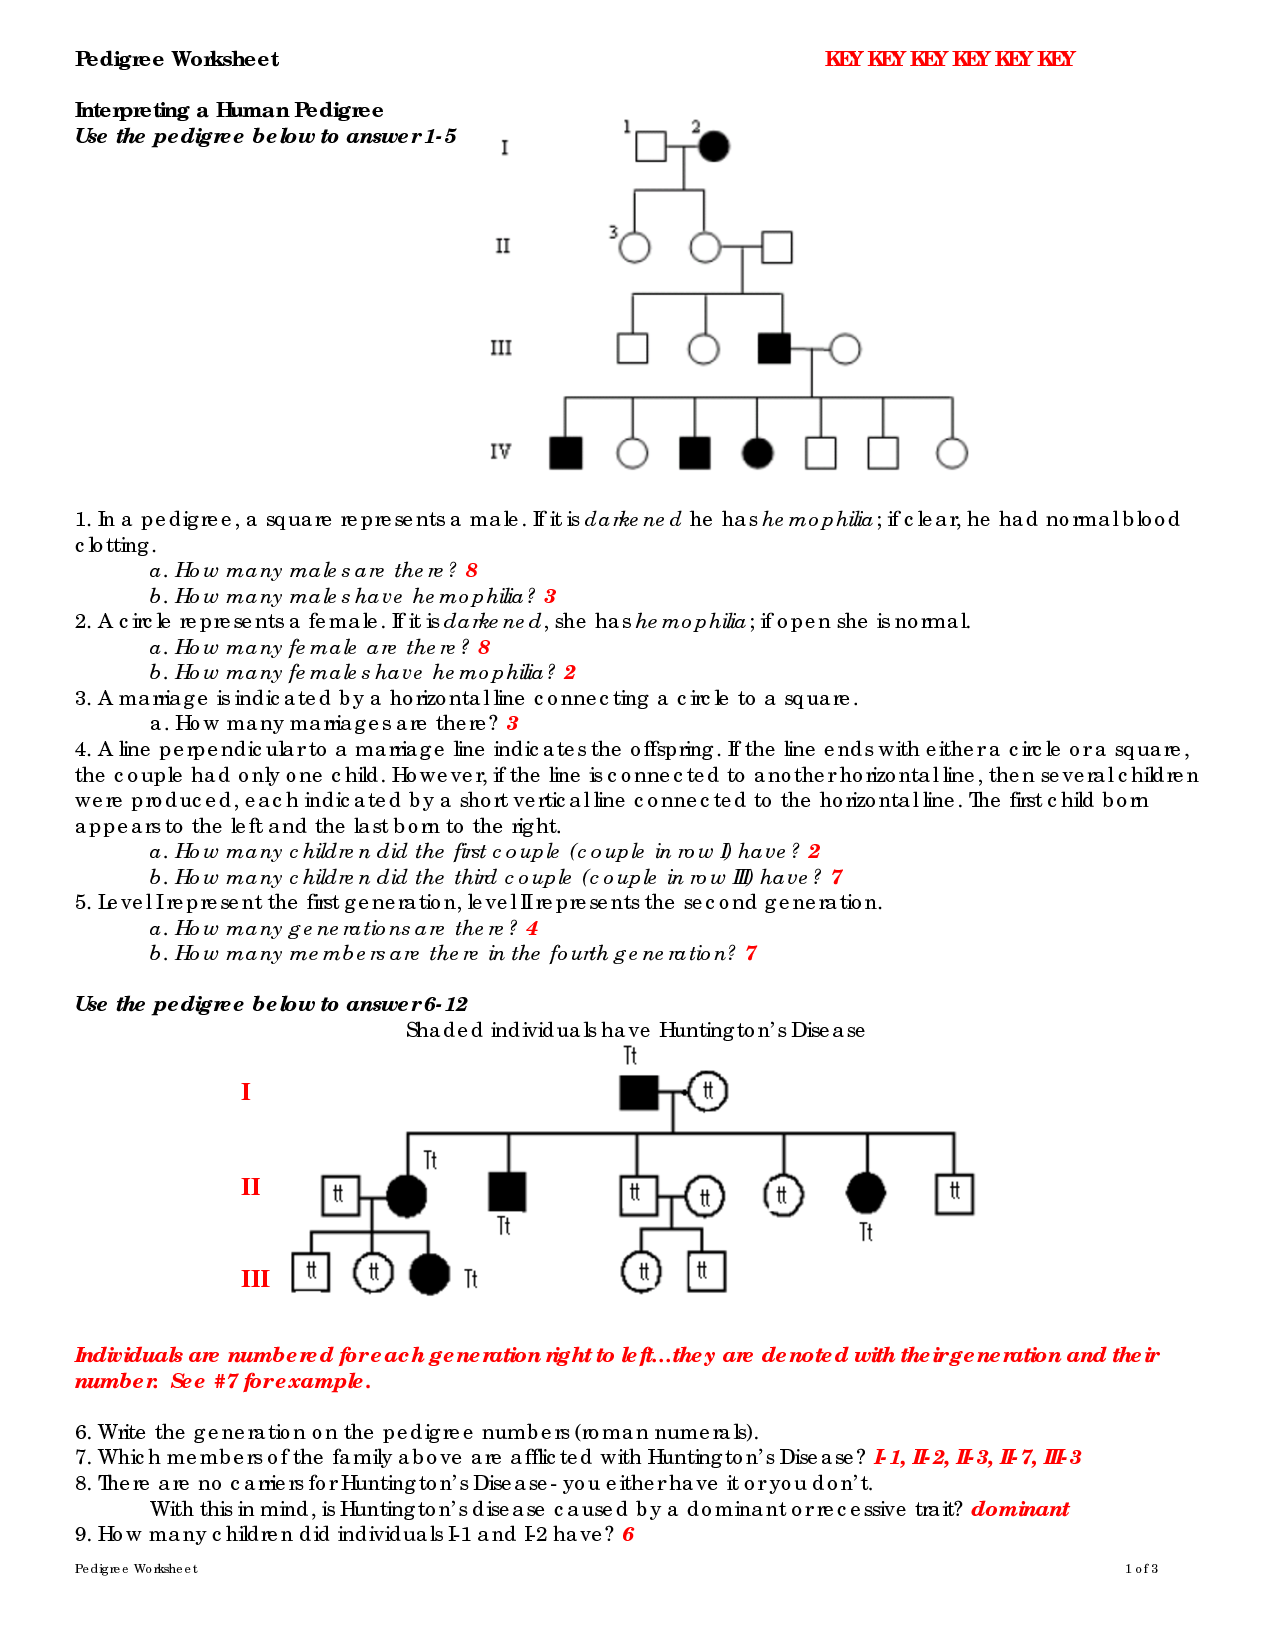 Autosomal Pedigrees Worksheet Answer Key